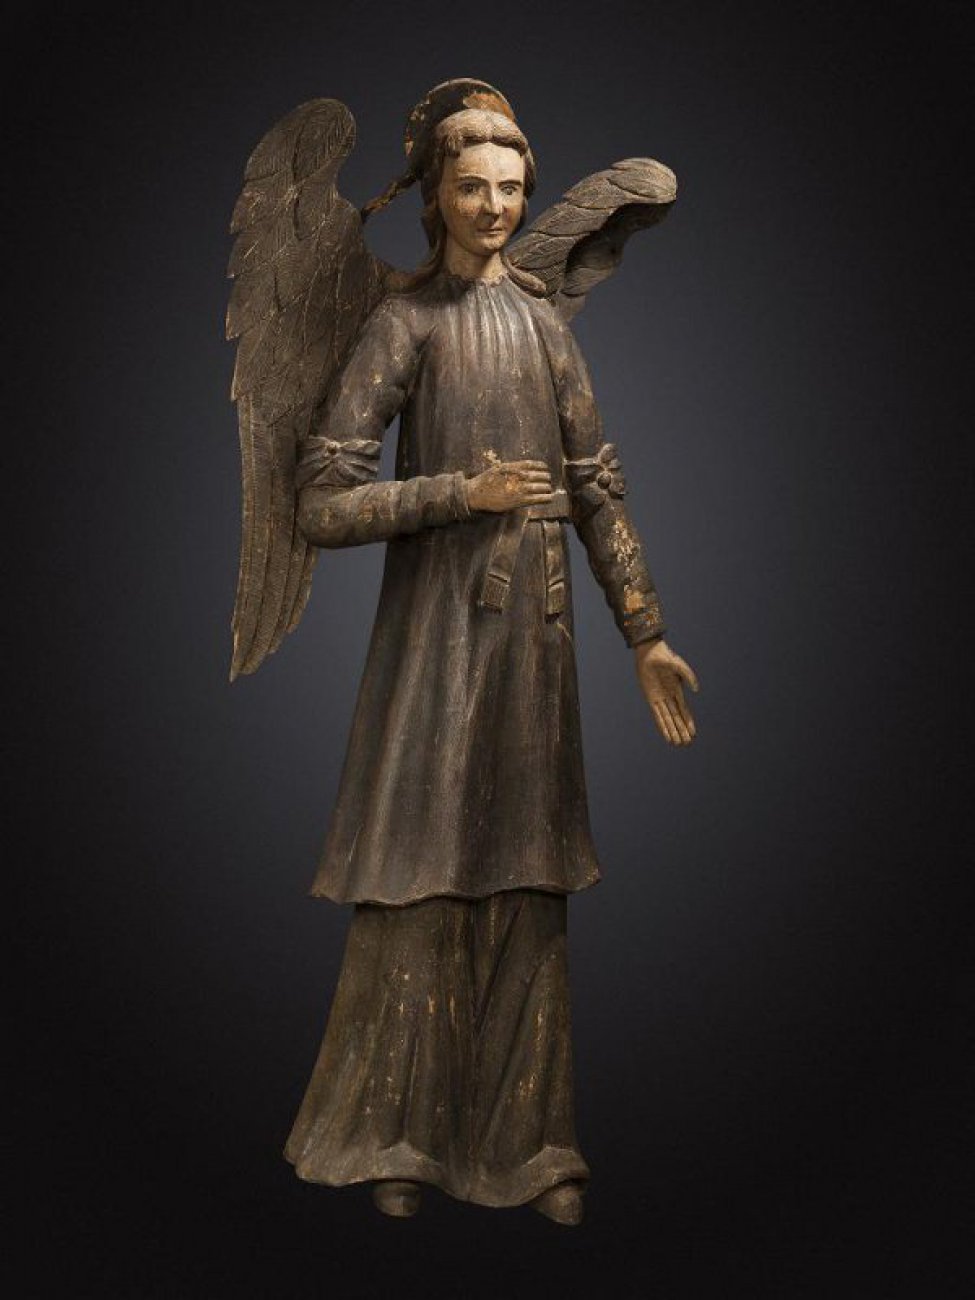 В правой руке ангела - рипида, левая рука опущена. Ангел одет в хитон, поверх которого панцирь, опоясанный поясом. На рукавах выше локтей - бантовые повязки. Сзади на голове - «сияние».